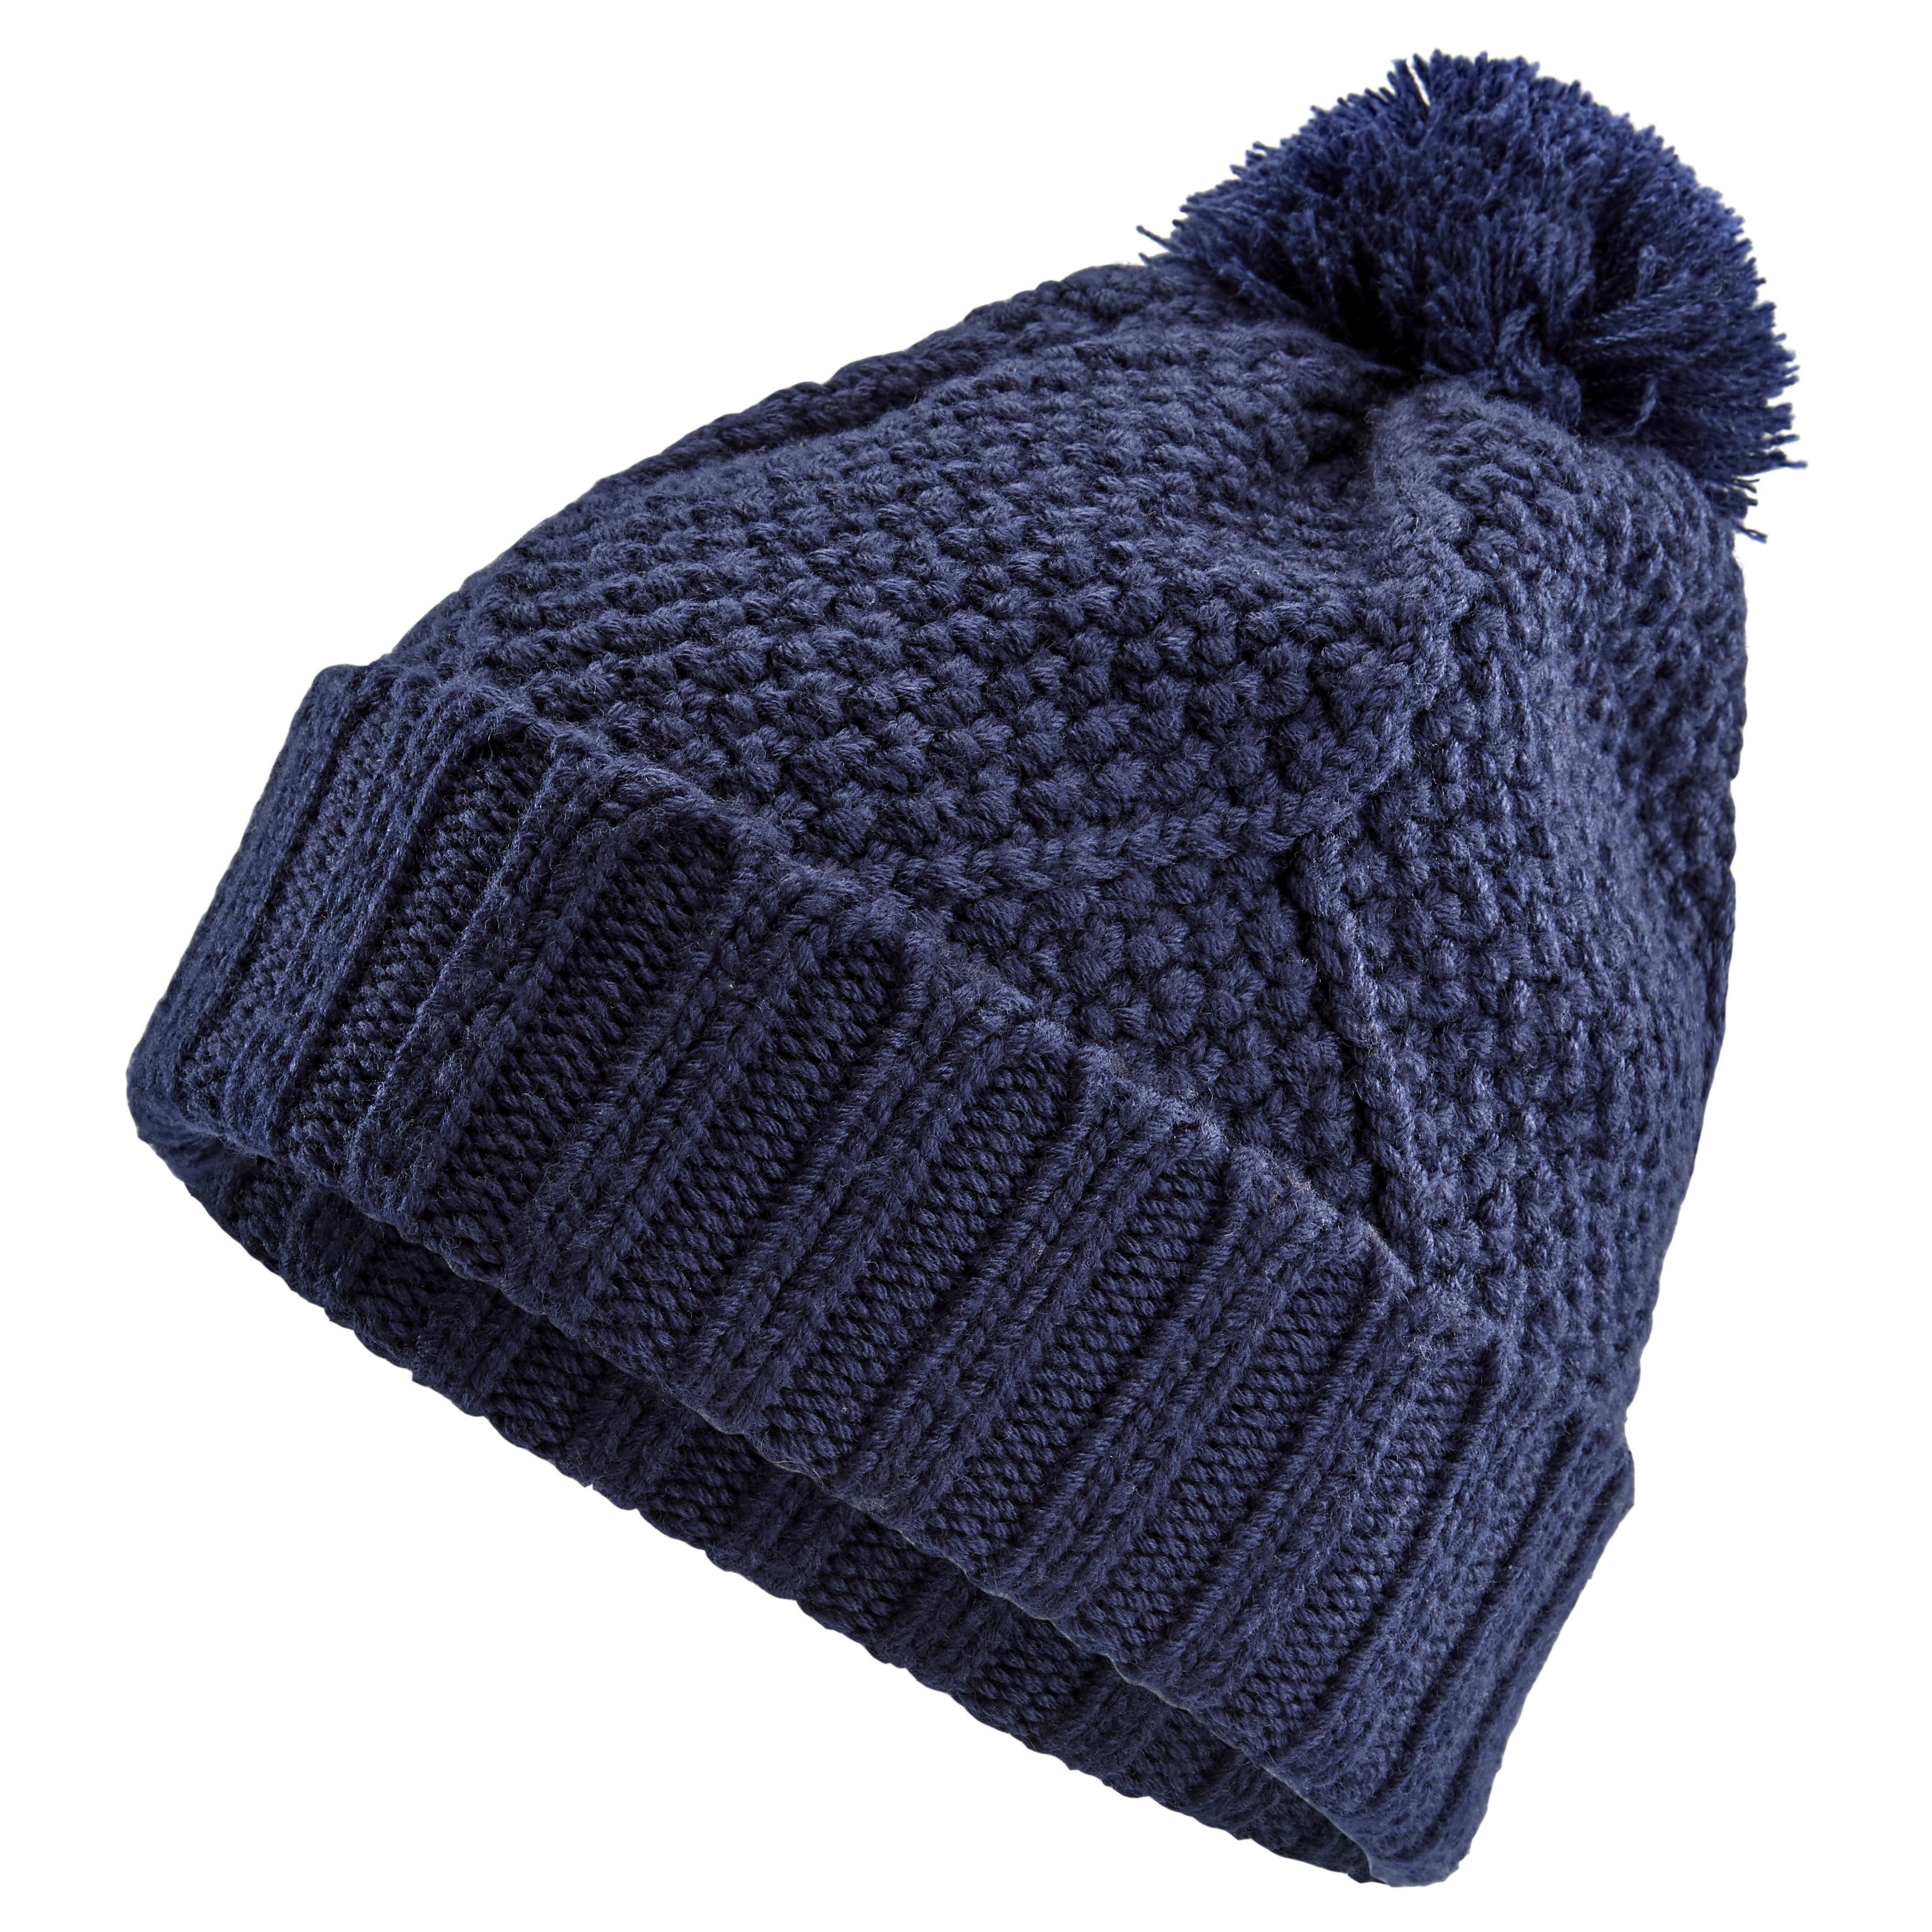 Grand bonnet de laine tricoté à pompon bleu foncé. Accessoire d